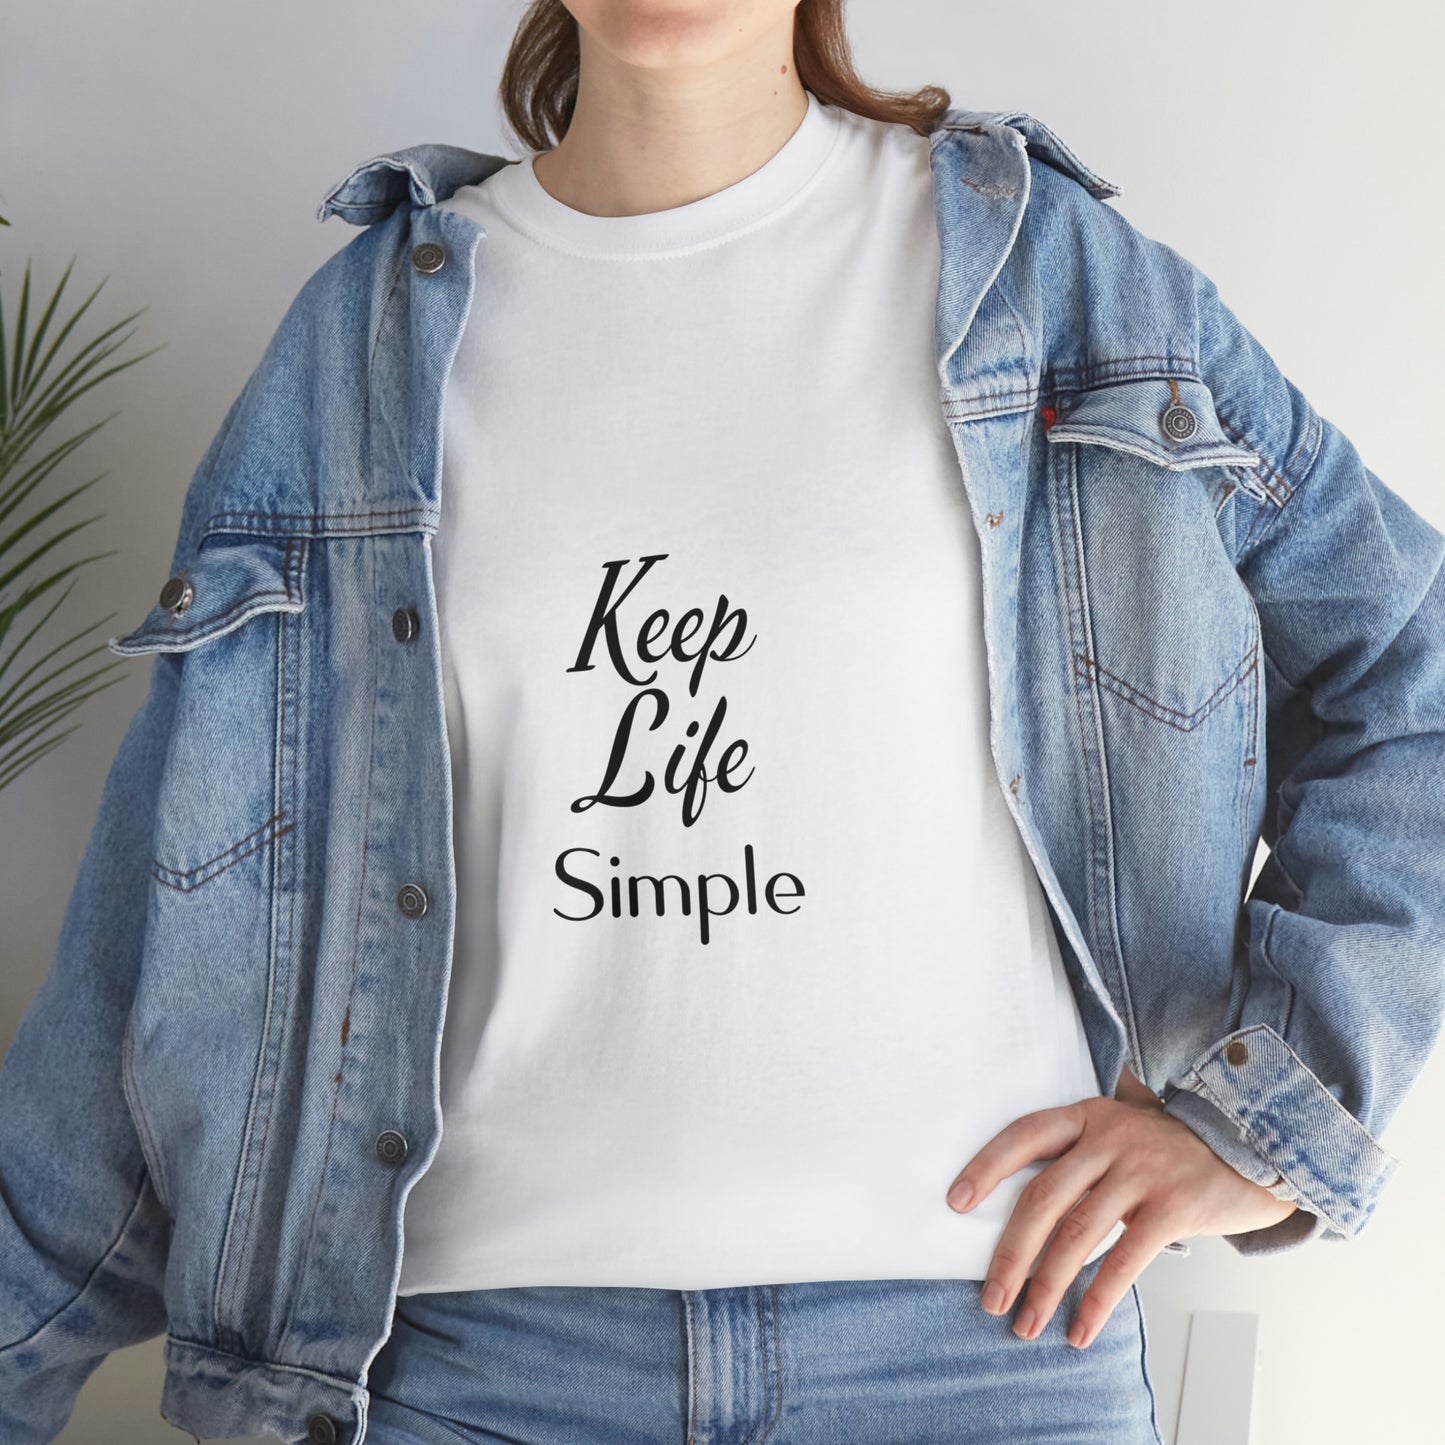 Keep Life Simple Unisex Heavy Cotton Tee